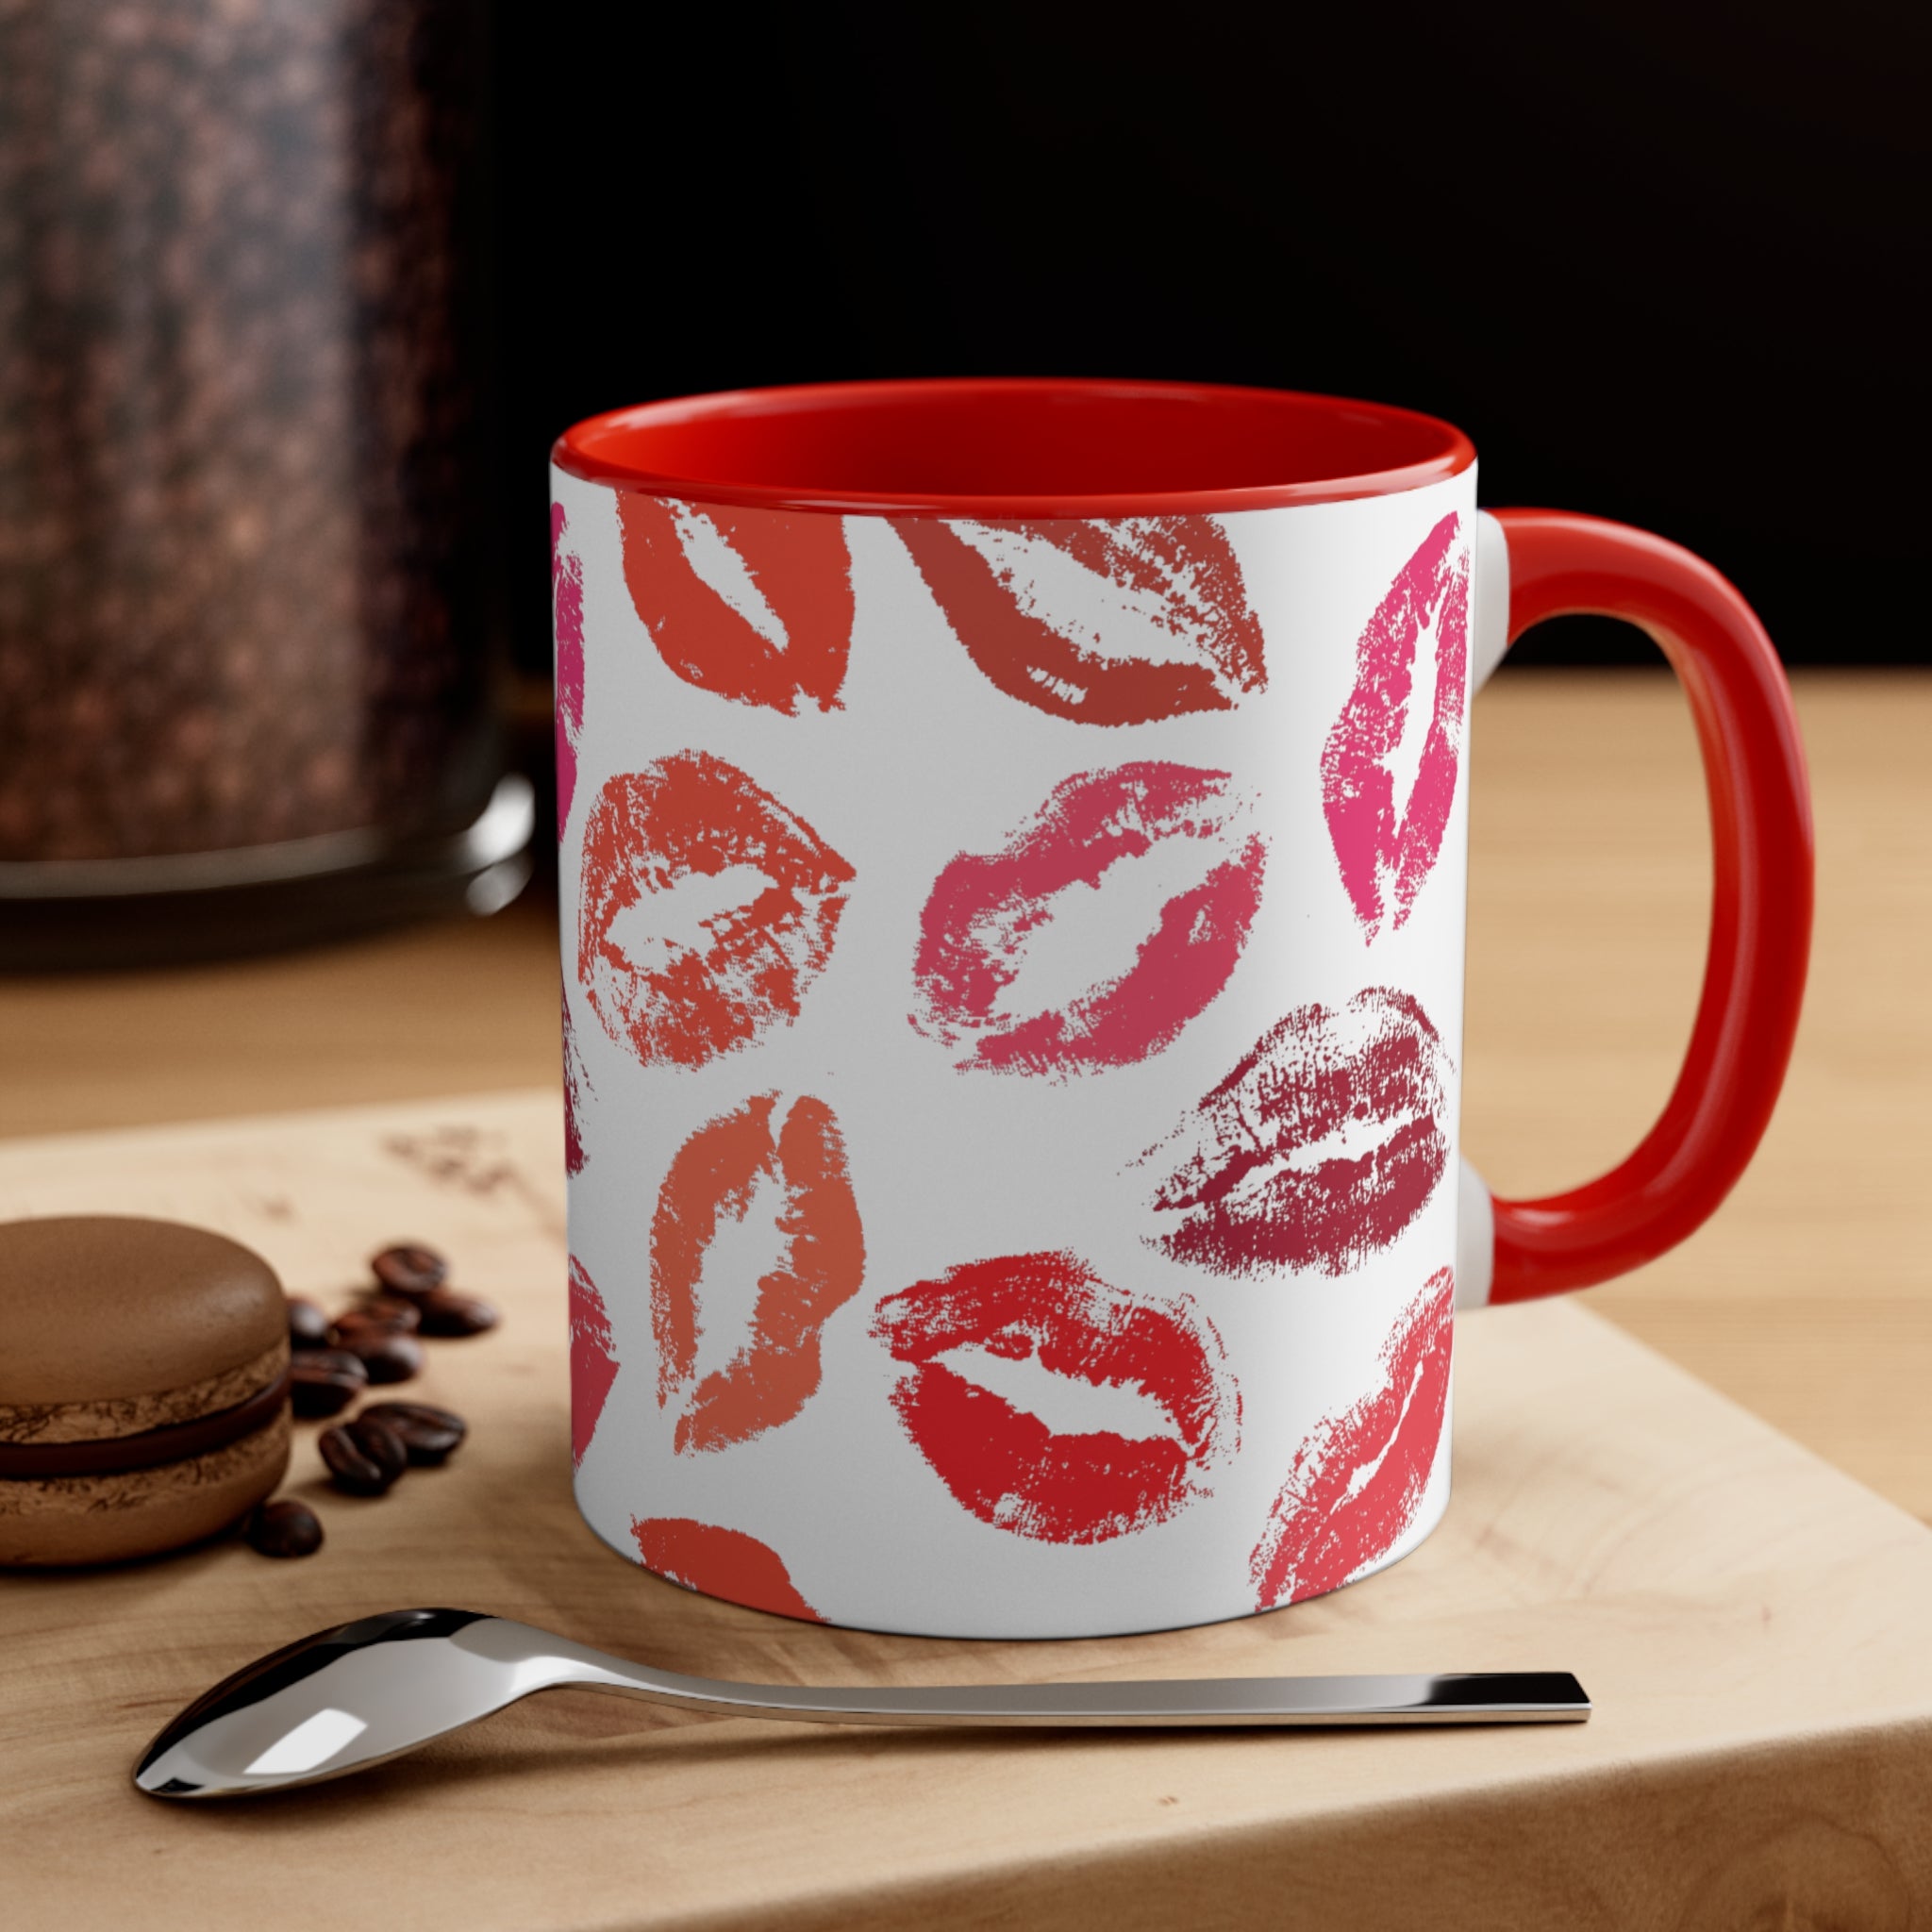 KISSES ACCENT COFFEE MUG, 5 COLORS, 11oz - UGO ROMANO URCMU011